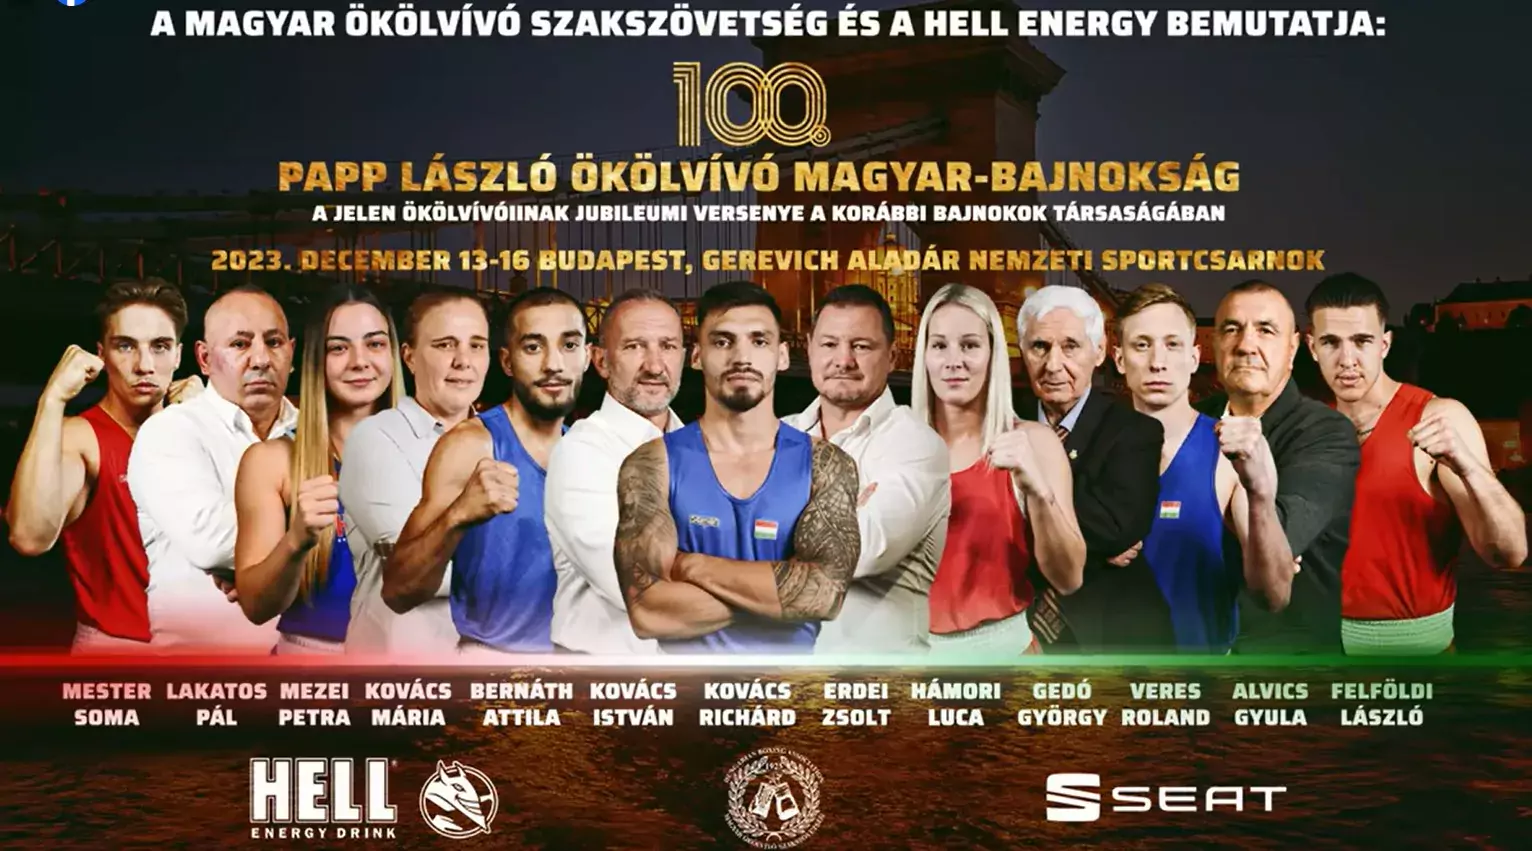 A Magyar Ökölvívó Szakszövetség és a HELL ENERGY olyan ökölvívó show-t hoz el nekünk, amelyet Magyarországon még nem láthattak sportrajongók